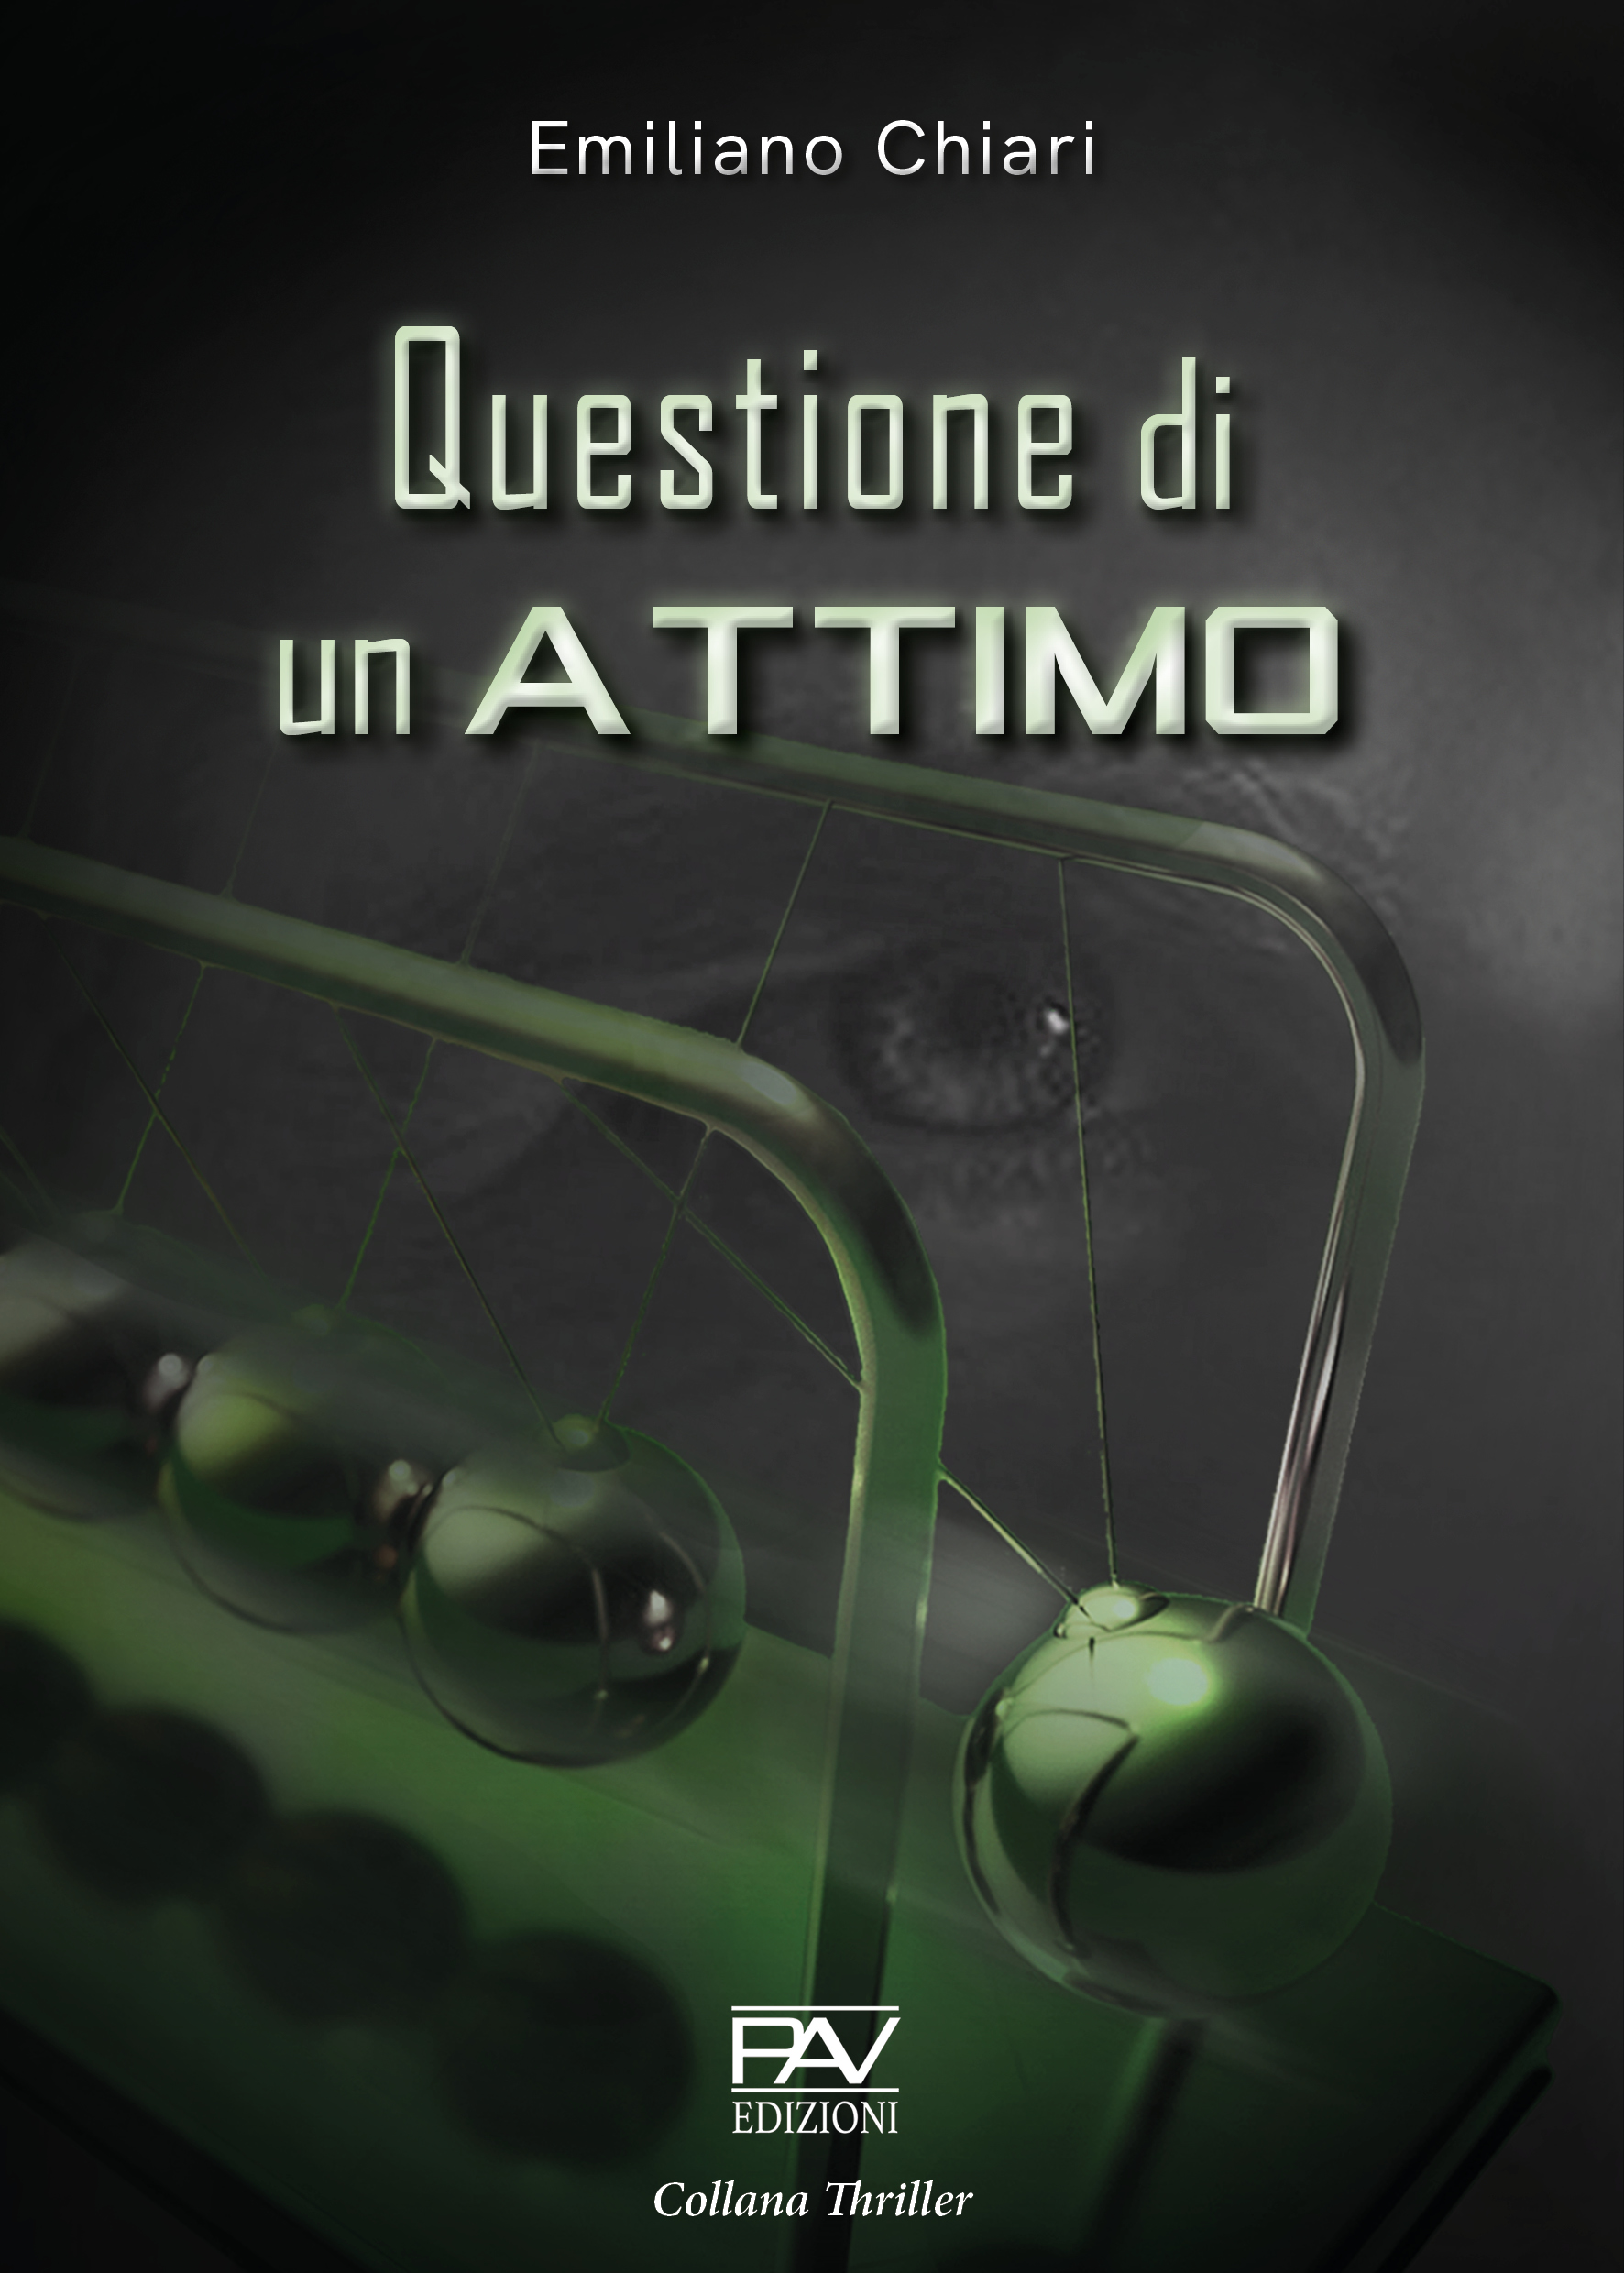 Presentazione del libro “Questione di un attimo” di Emiliano Chiari